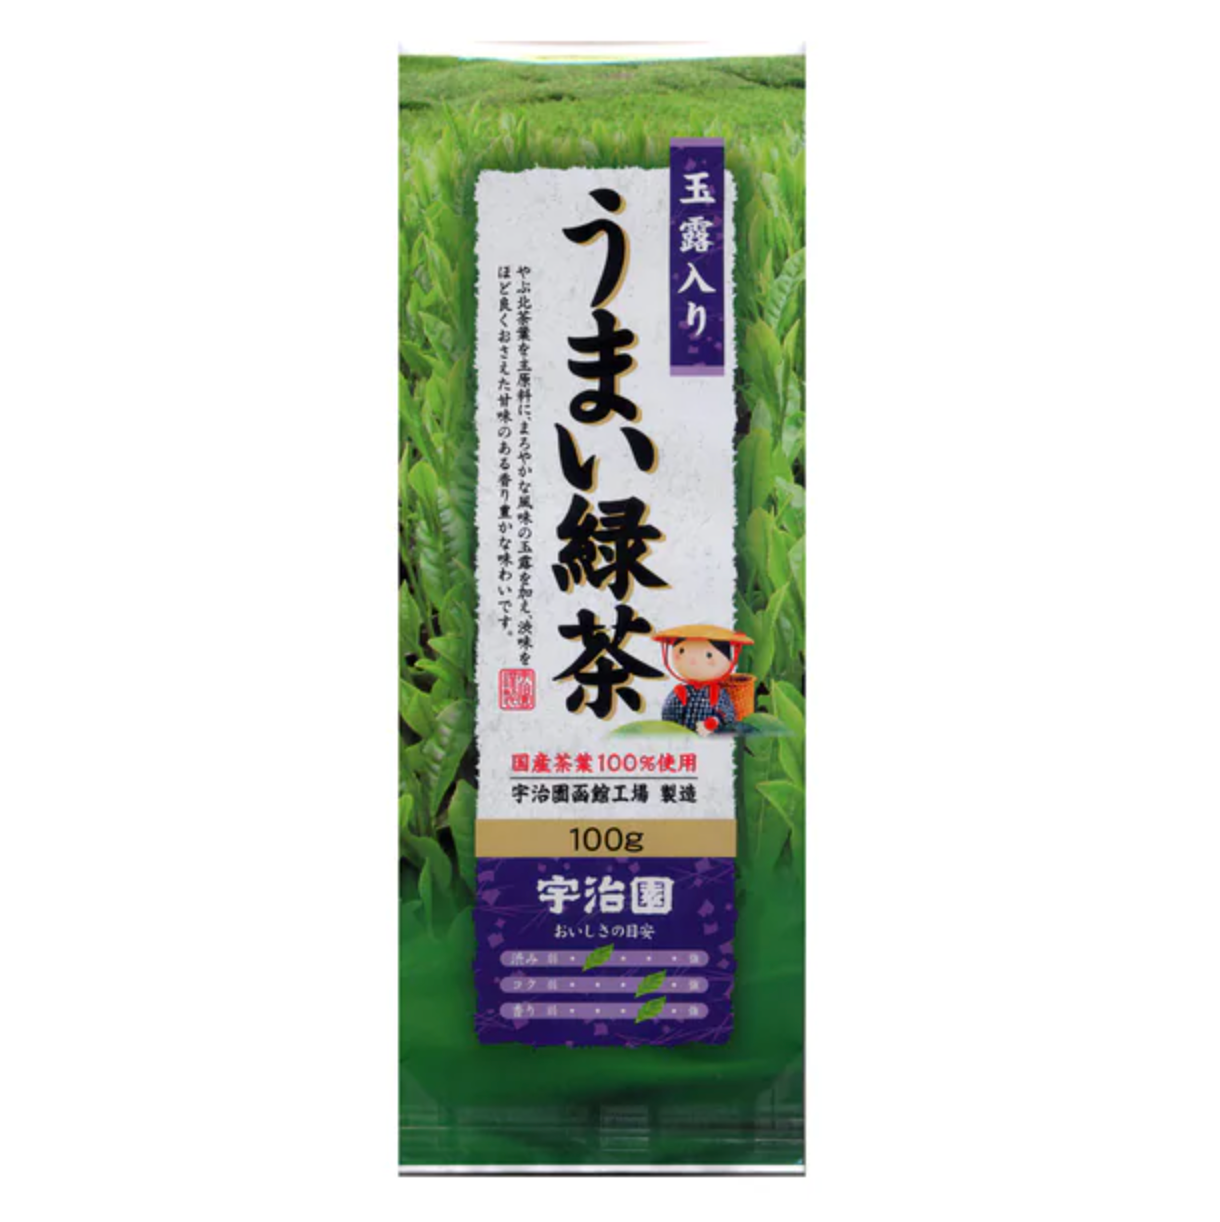 Ujien Gyokuro Delicious Green Tea 100g